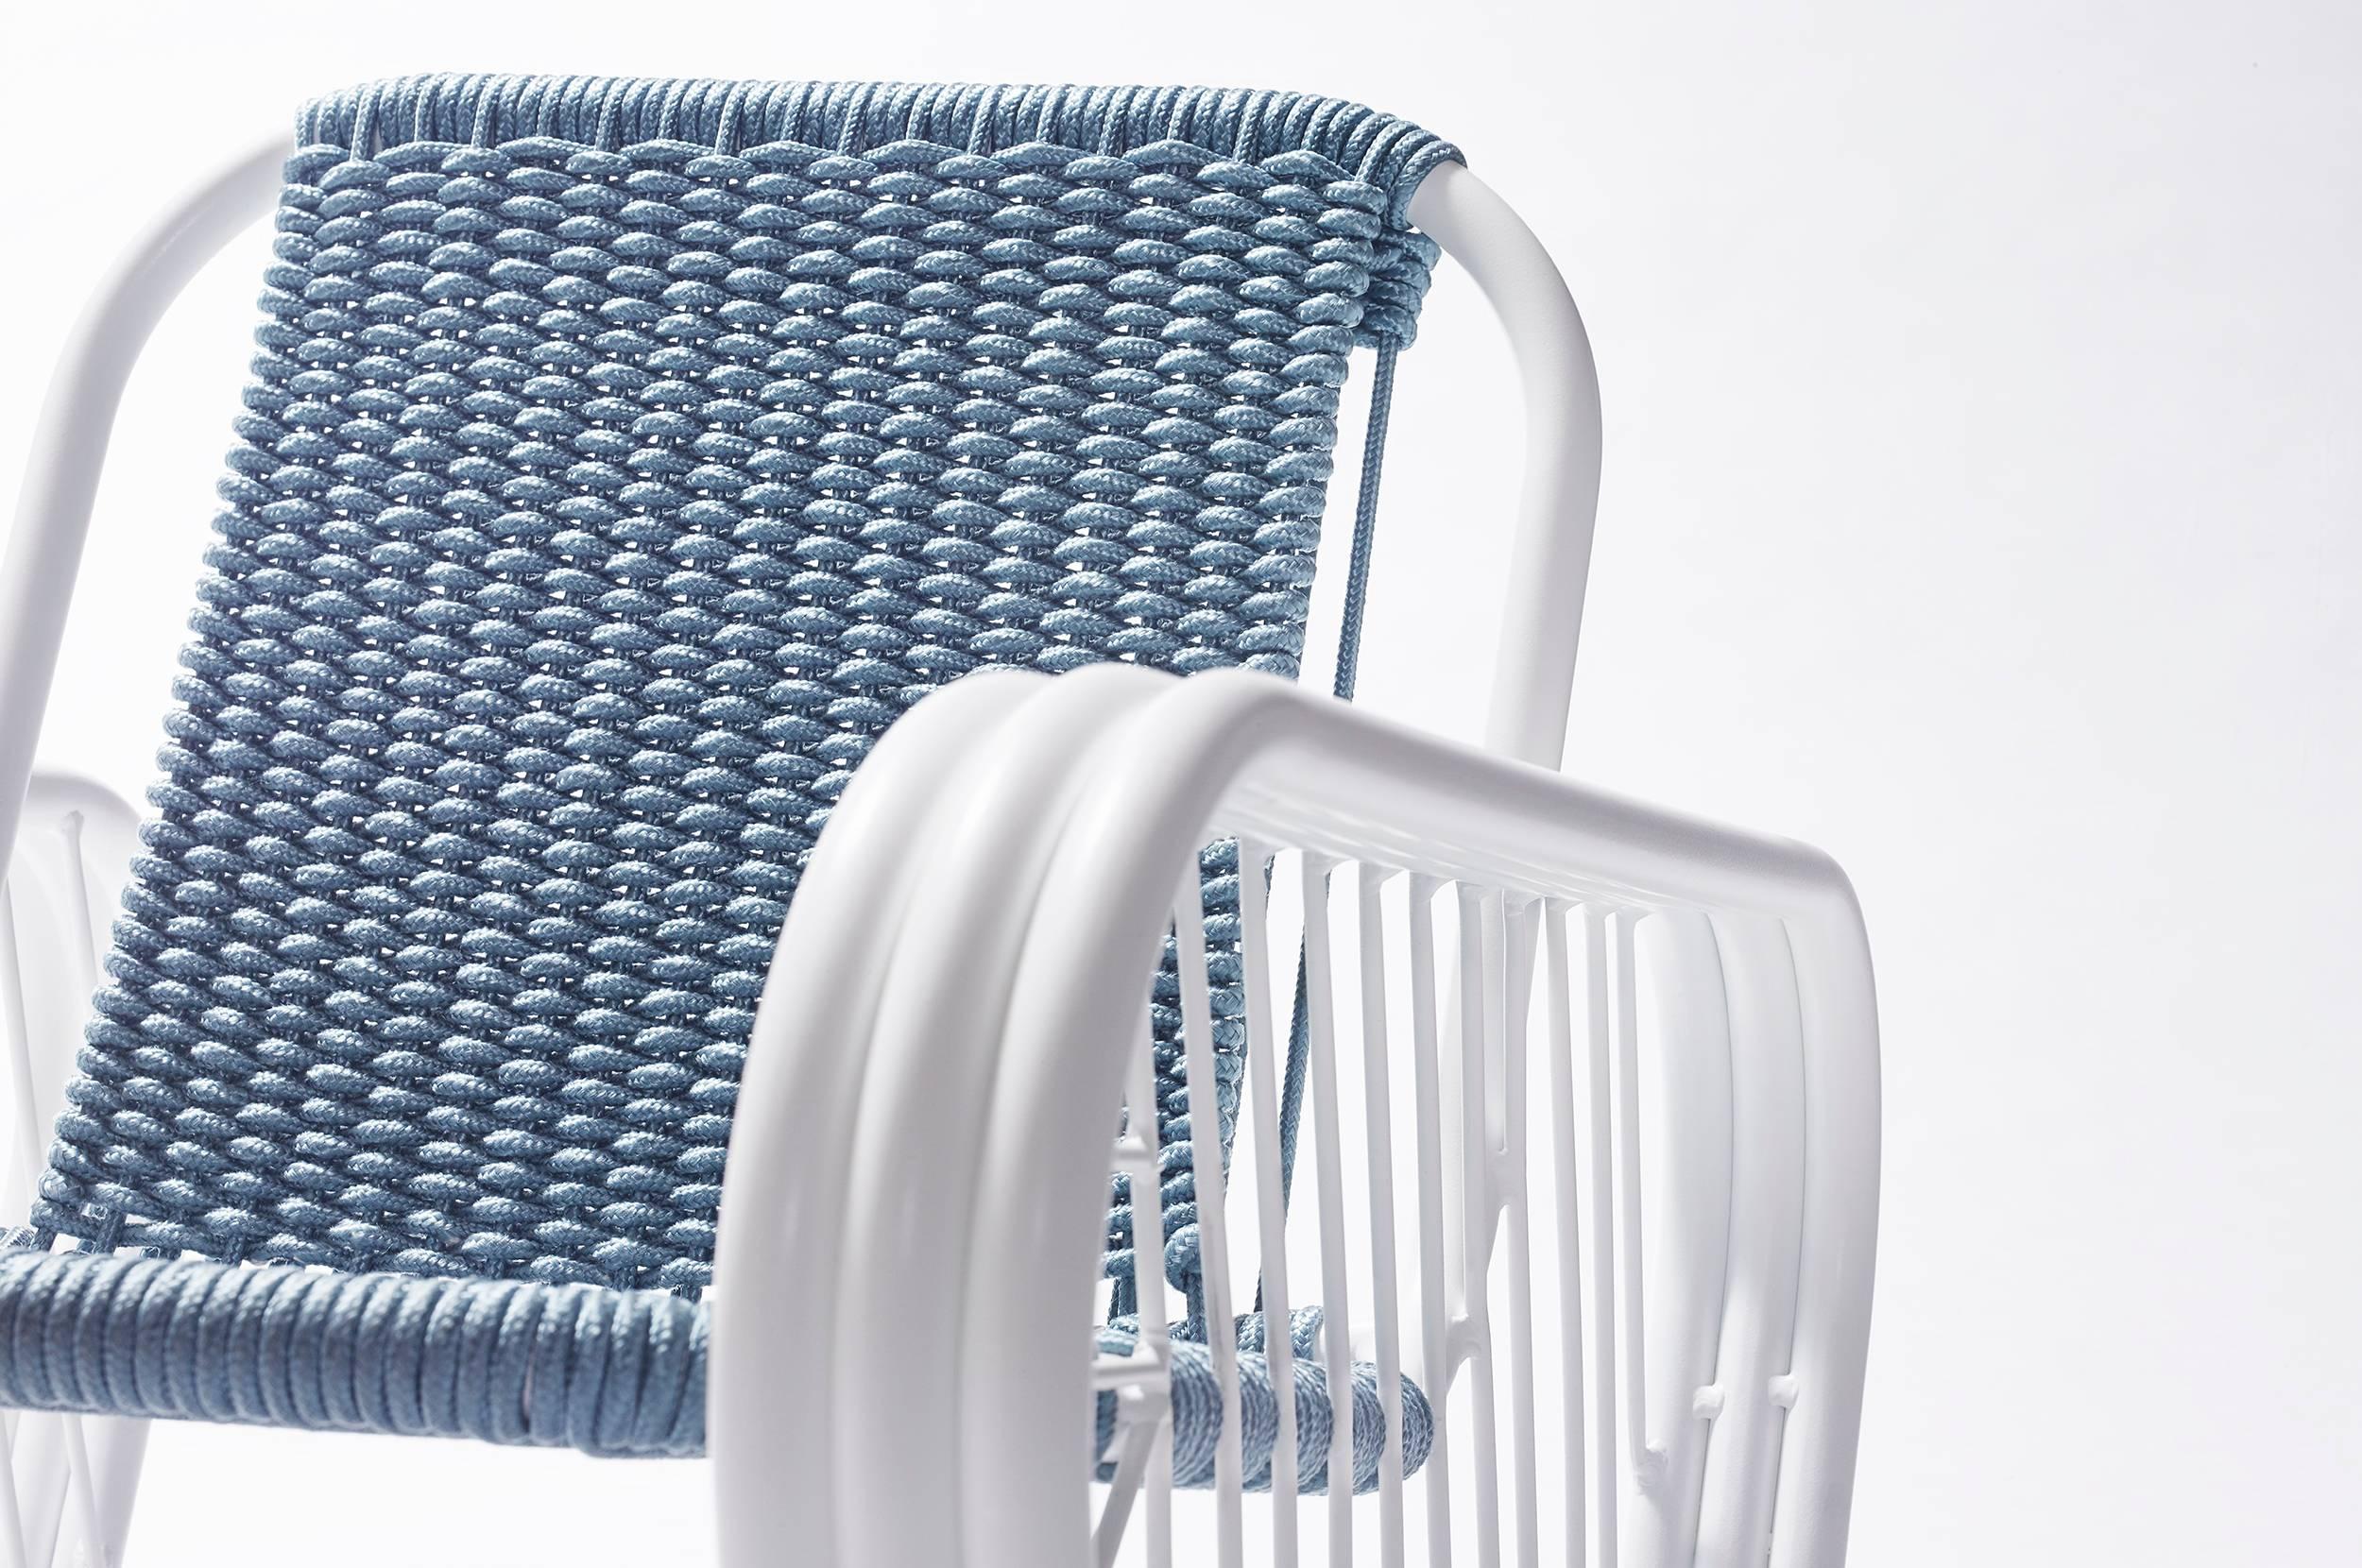 Granada Outdoor Club Chair with Hand Woven Rope Seat 2018 by Post & Gleam (Pulverbeschichtet) im Angebot